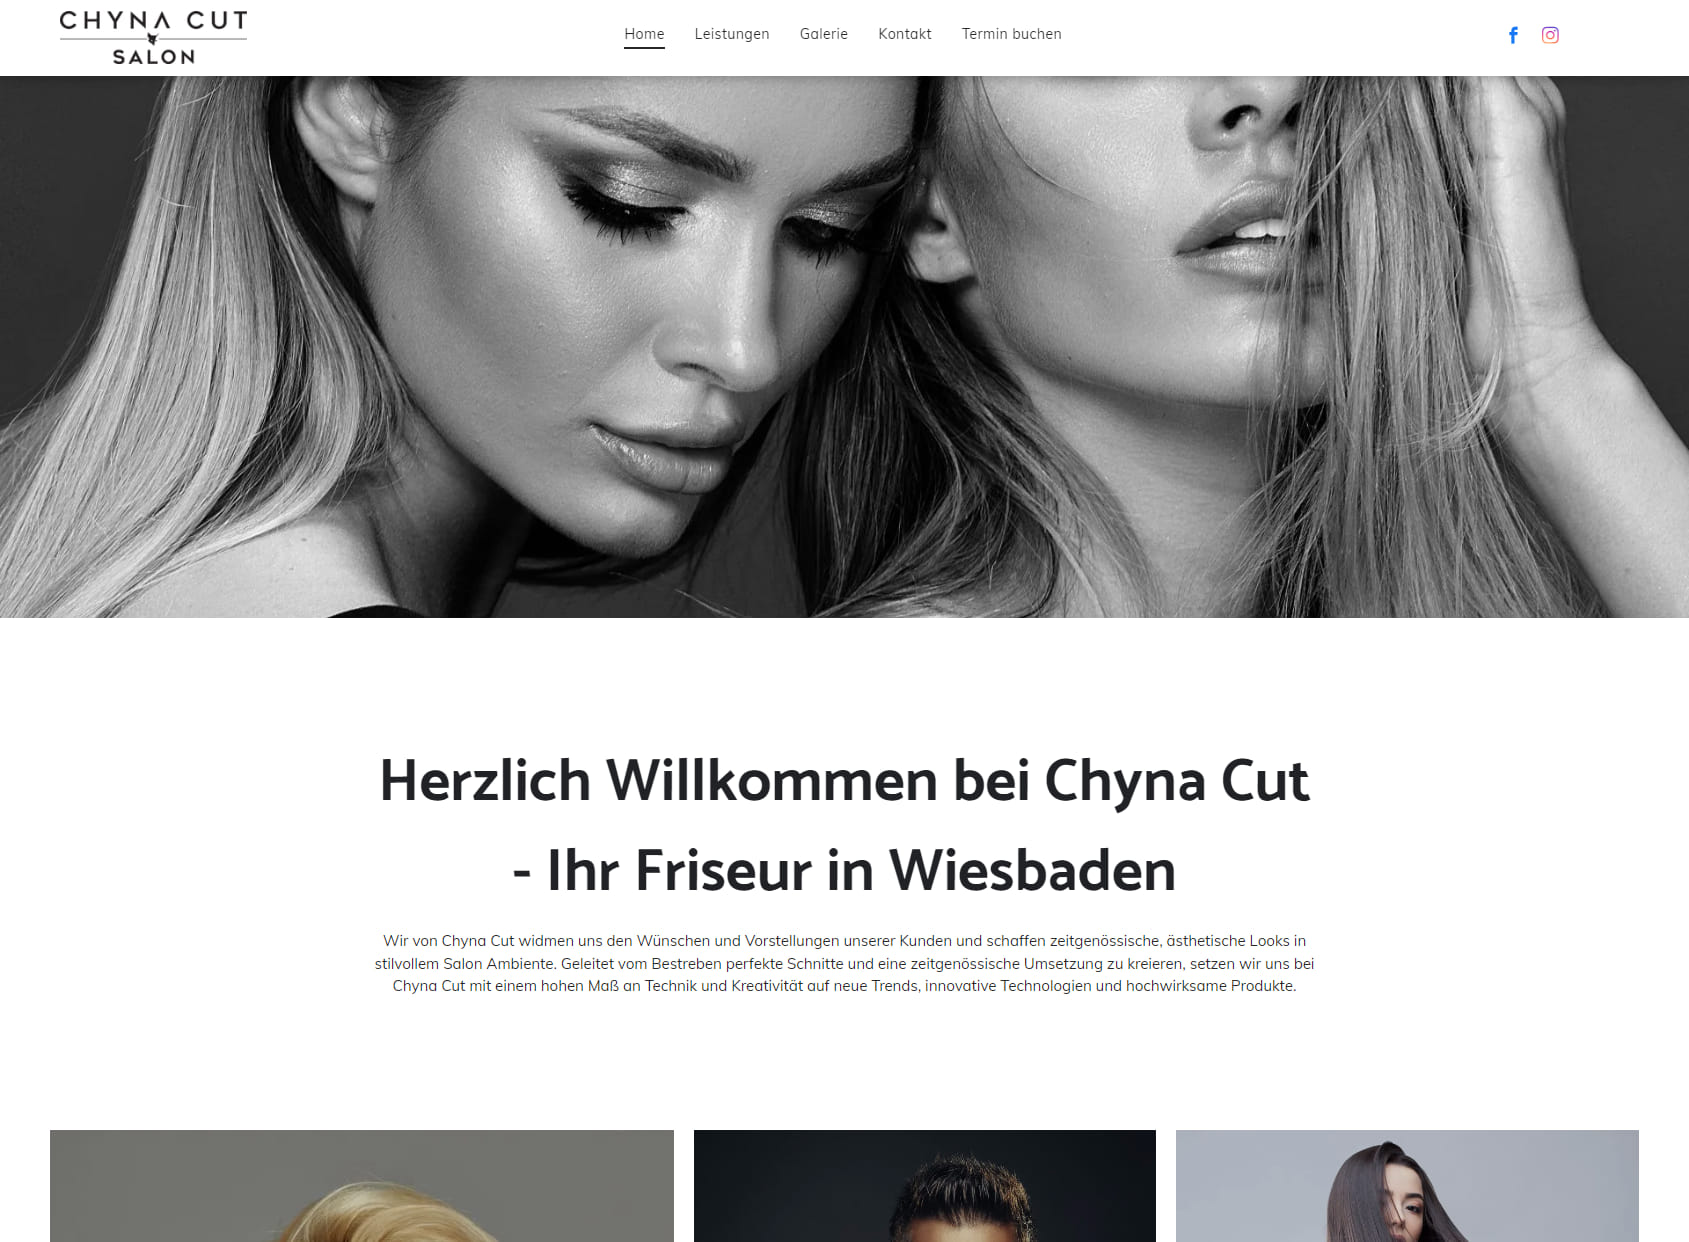 Chyna Cut Salon - Friseur Wiesbaden